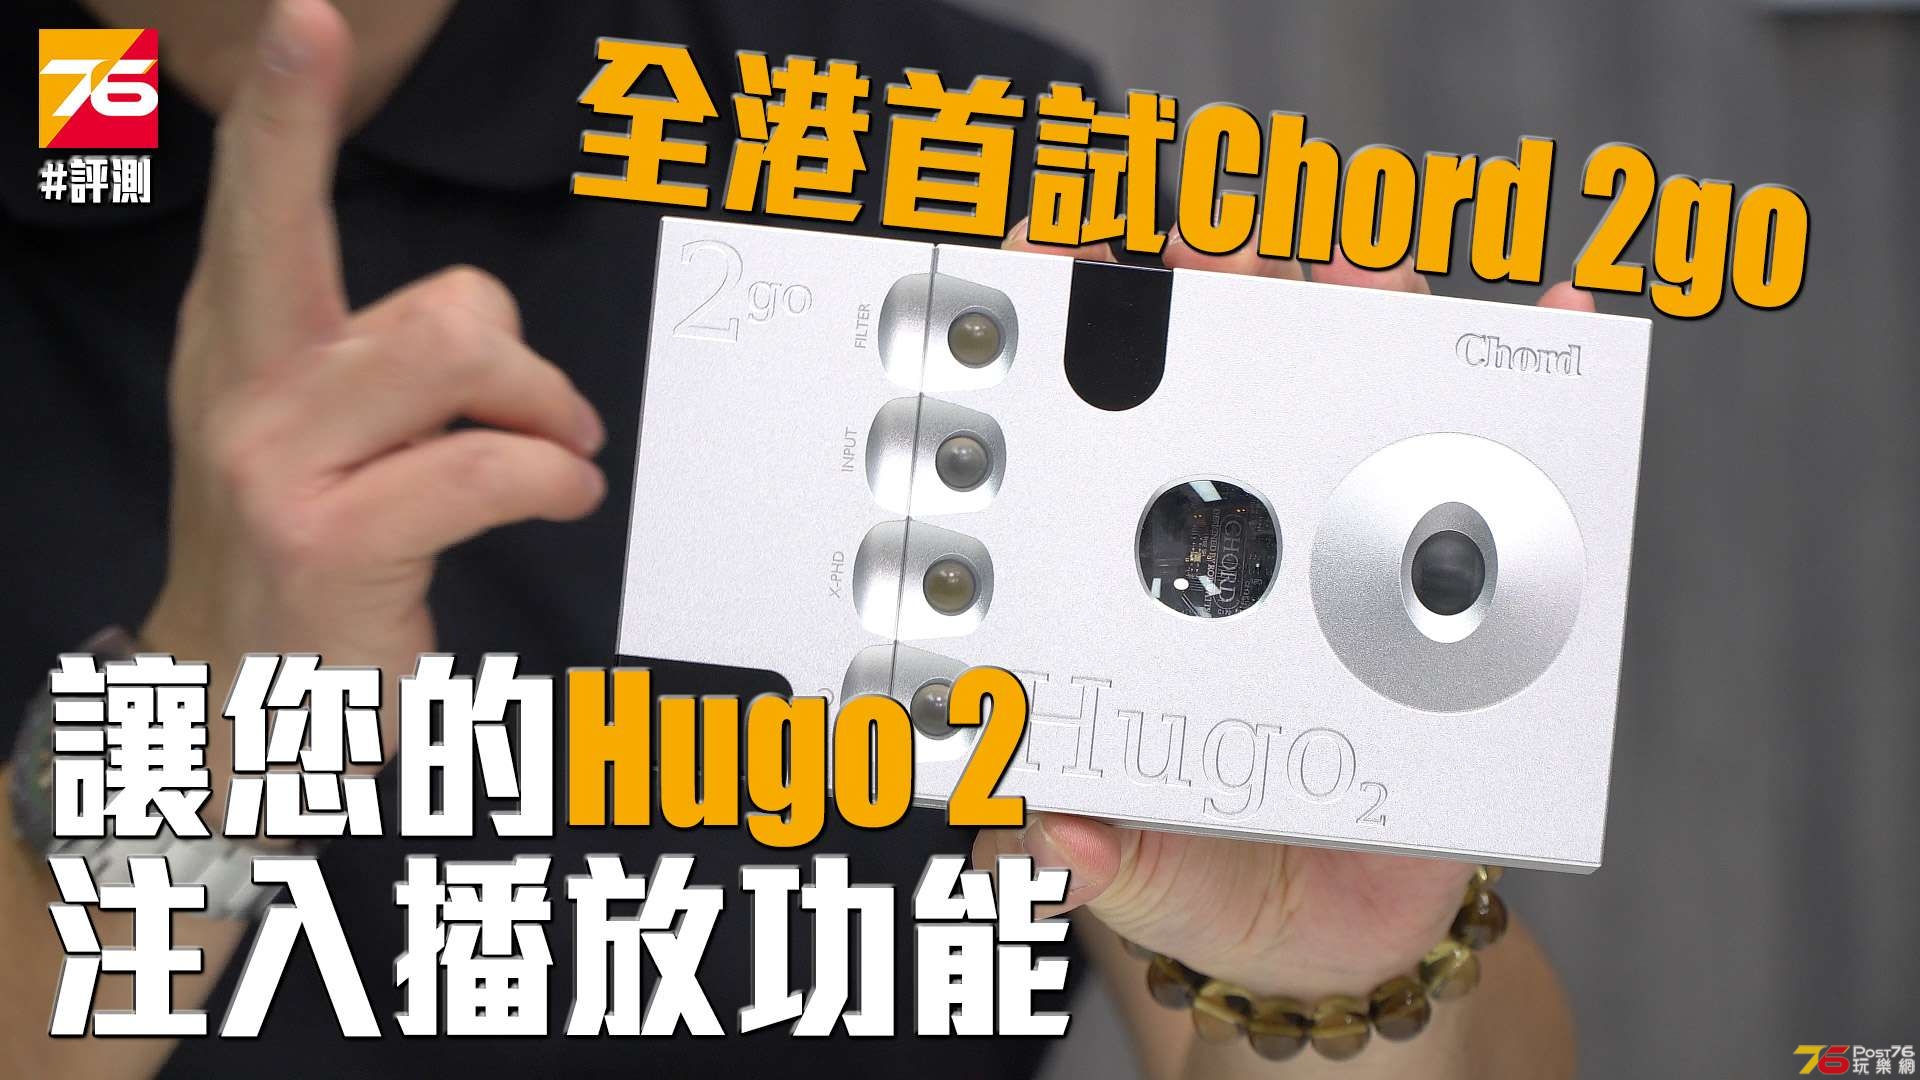 chord-hugo2-2go-review.jpg